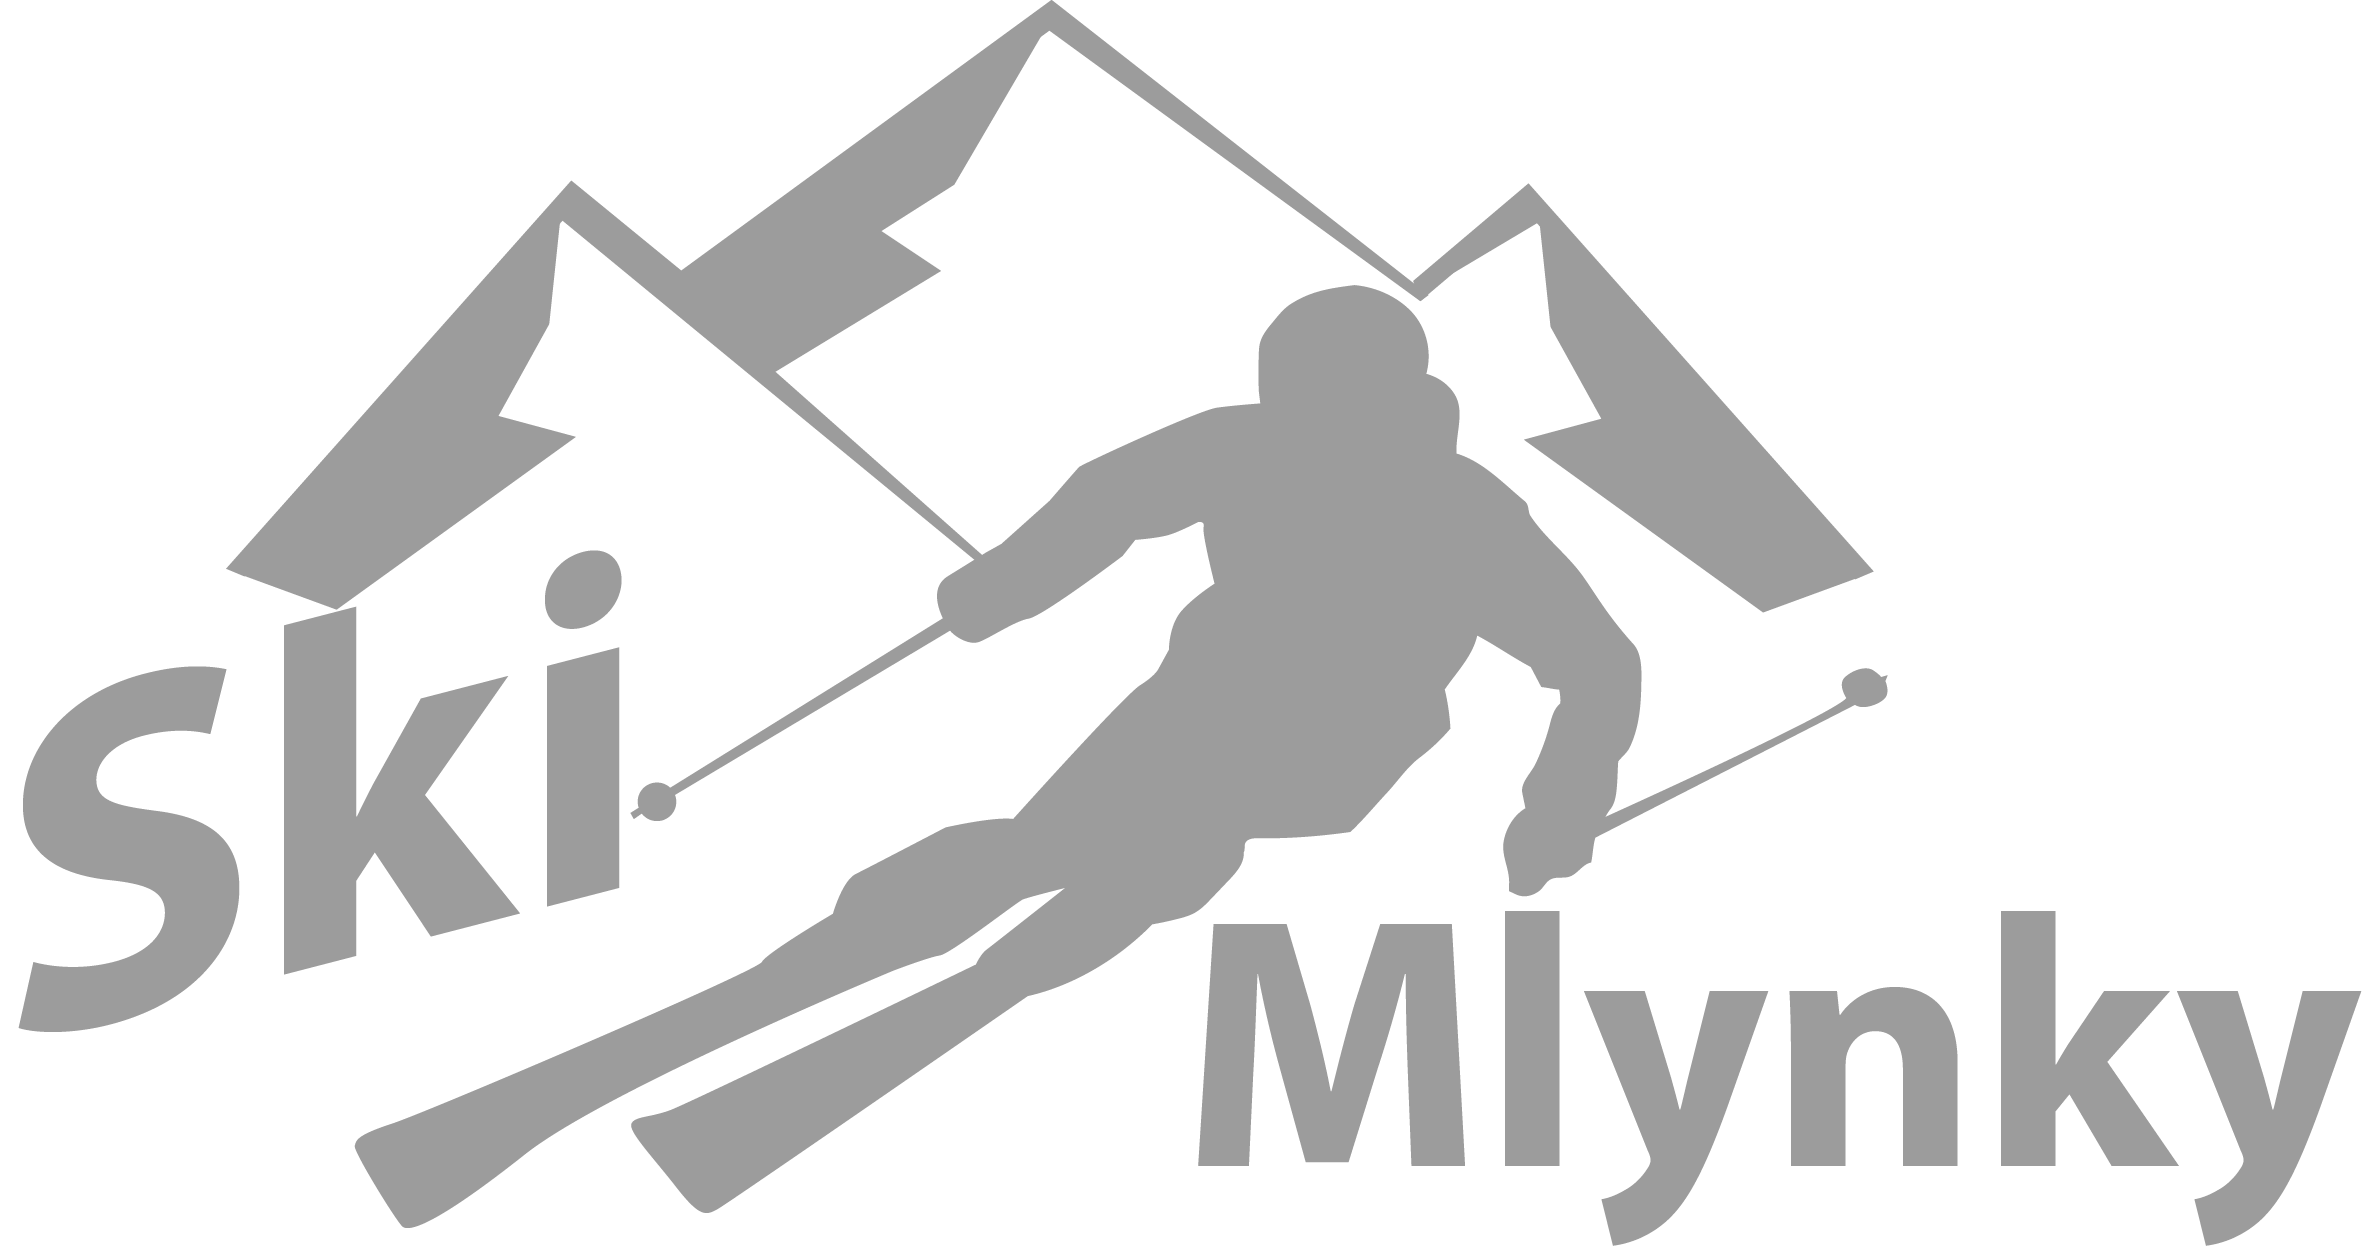 Skimlynky logo